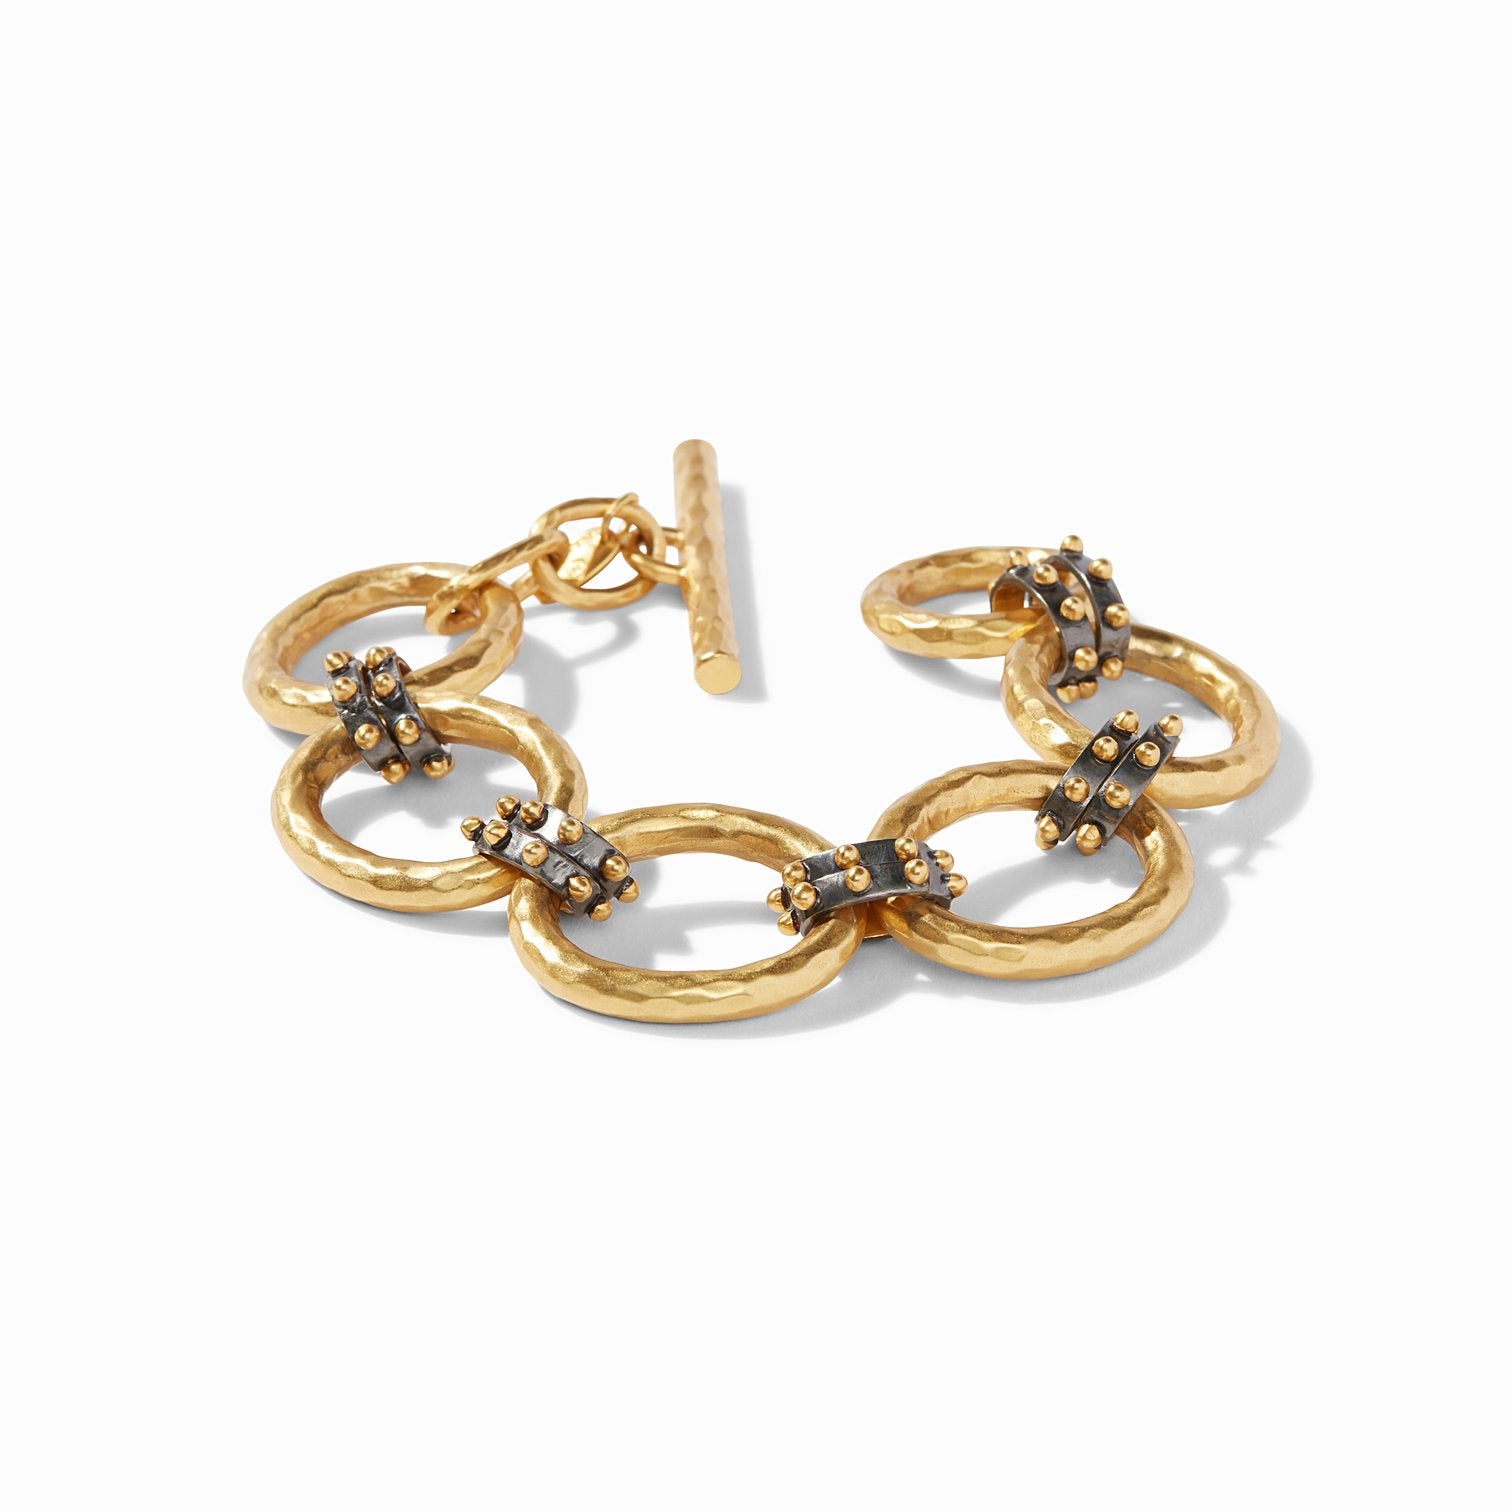 Soho Gold Link Bracelet- Julie Vos